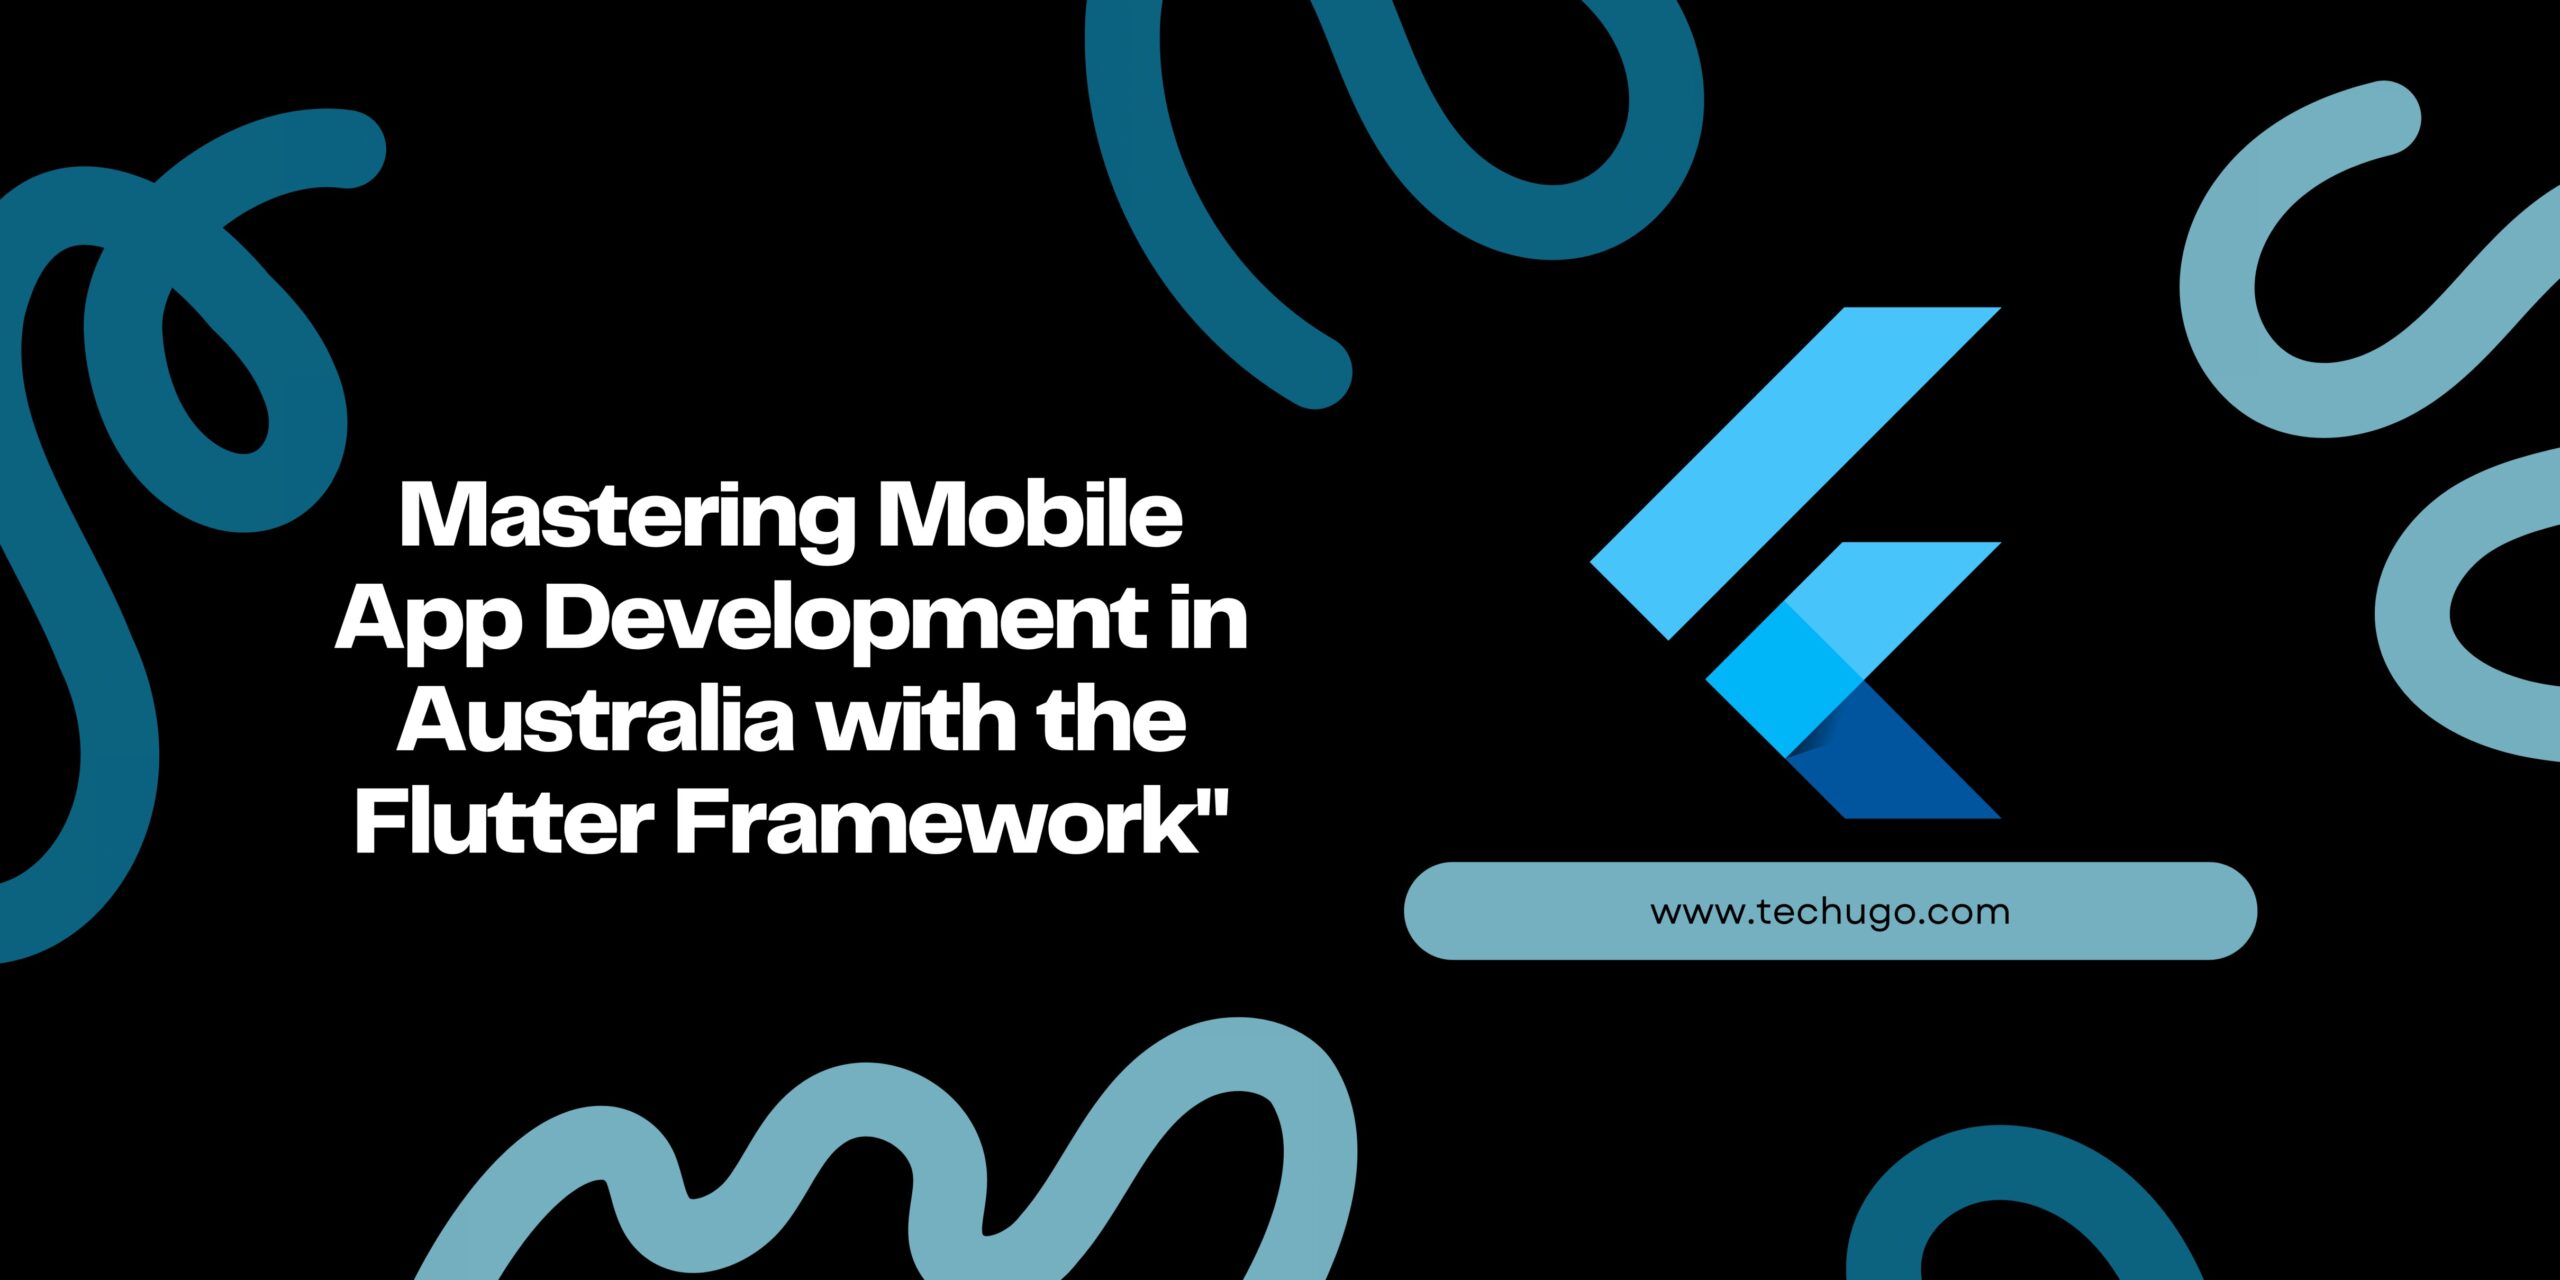 Mastering Mobile App Development in Australia with the Flutter Framework"